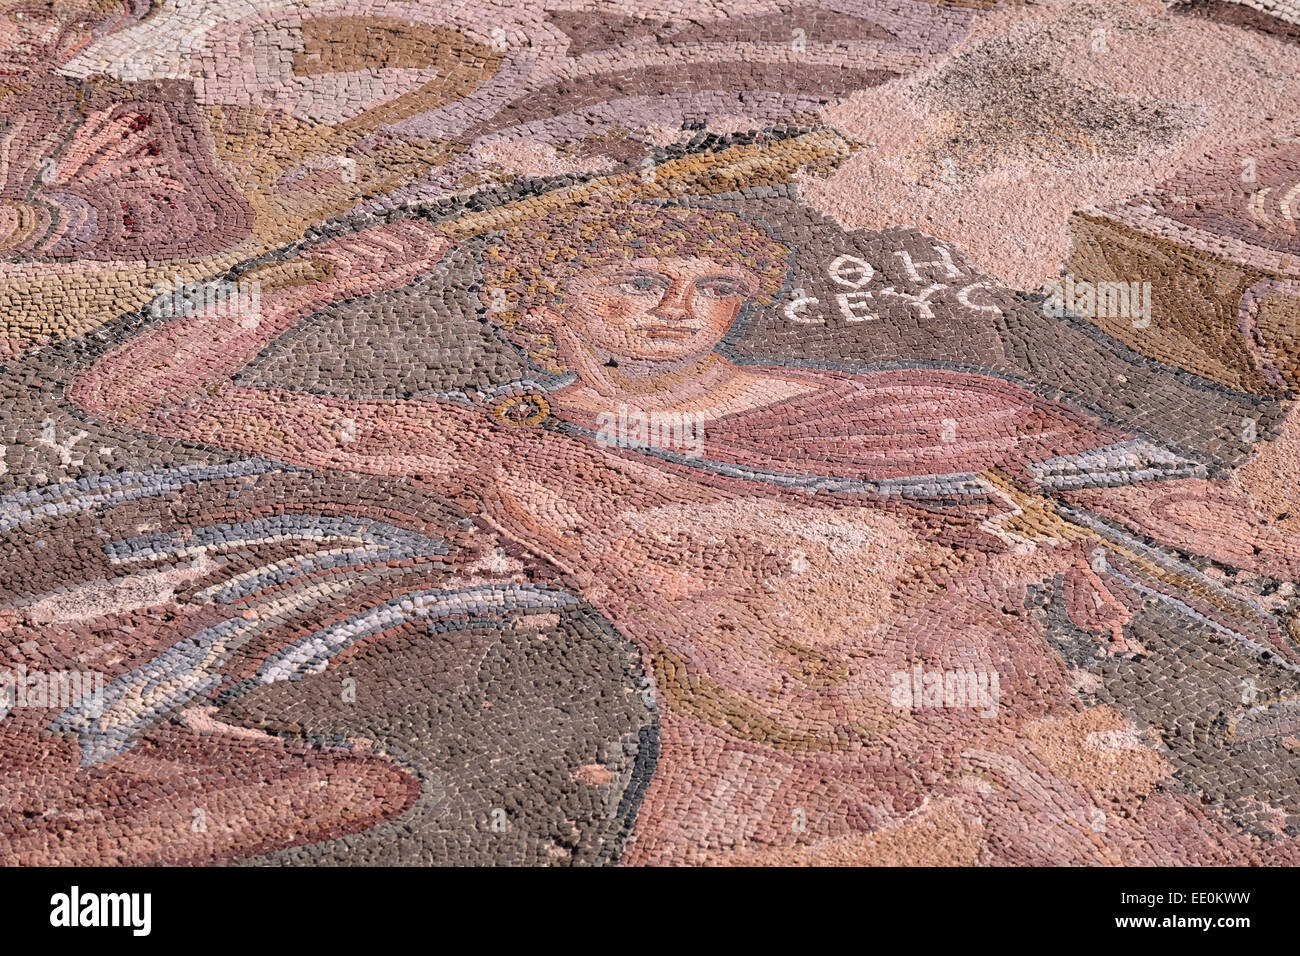 Mosaïque romaine dans la maison de Thésée, Nea Paphos, ouest de Chypre. Détail de mosaïque représentant Thésée terrassant le minotaure. Banque D'Images